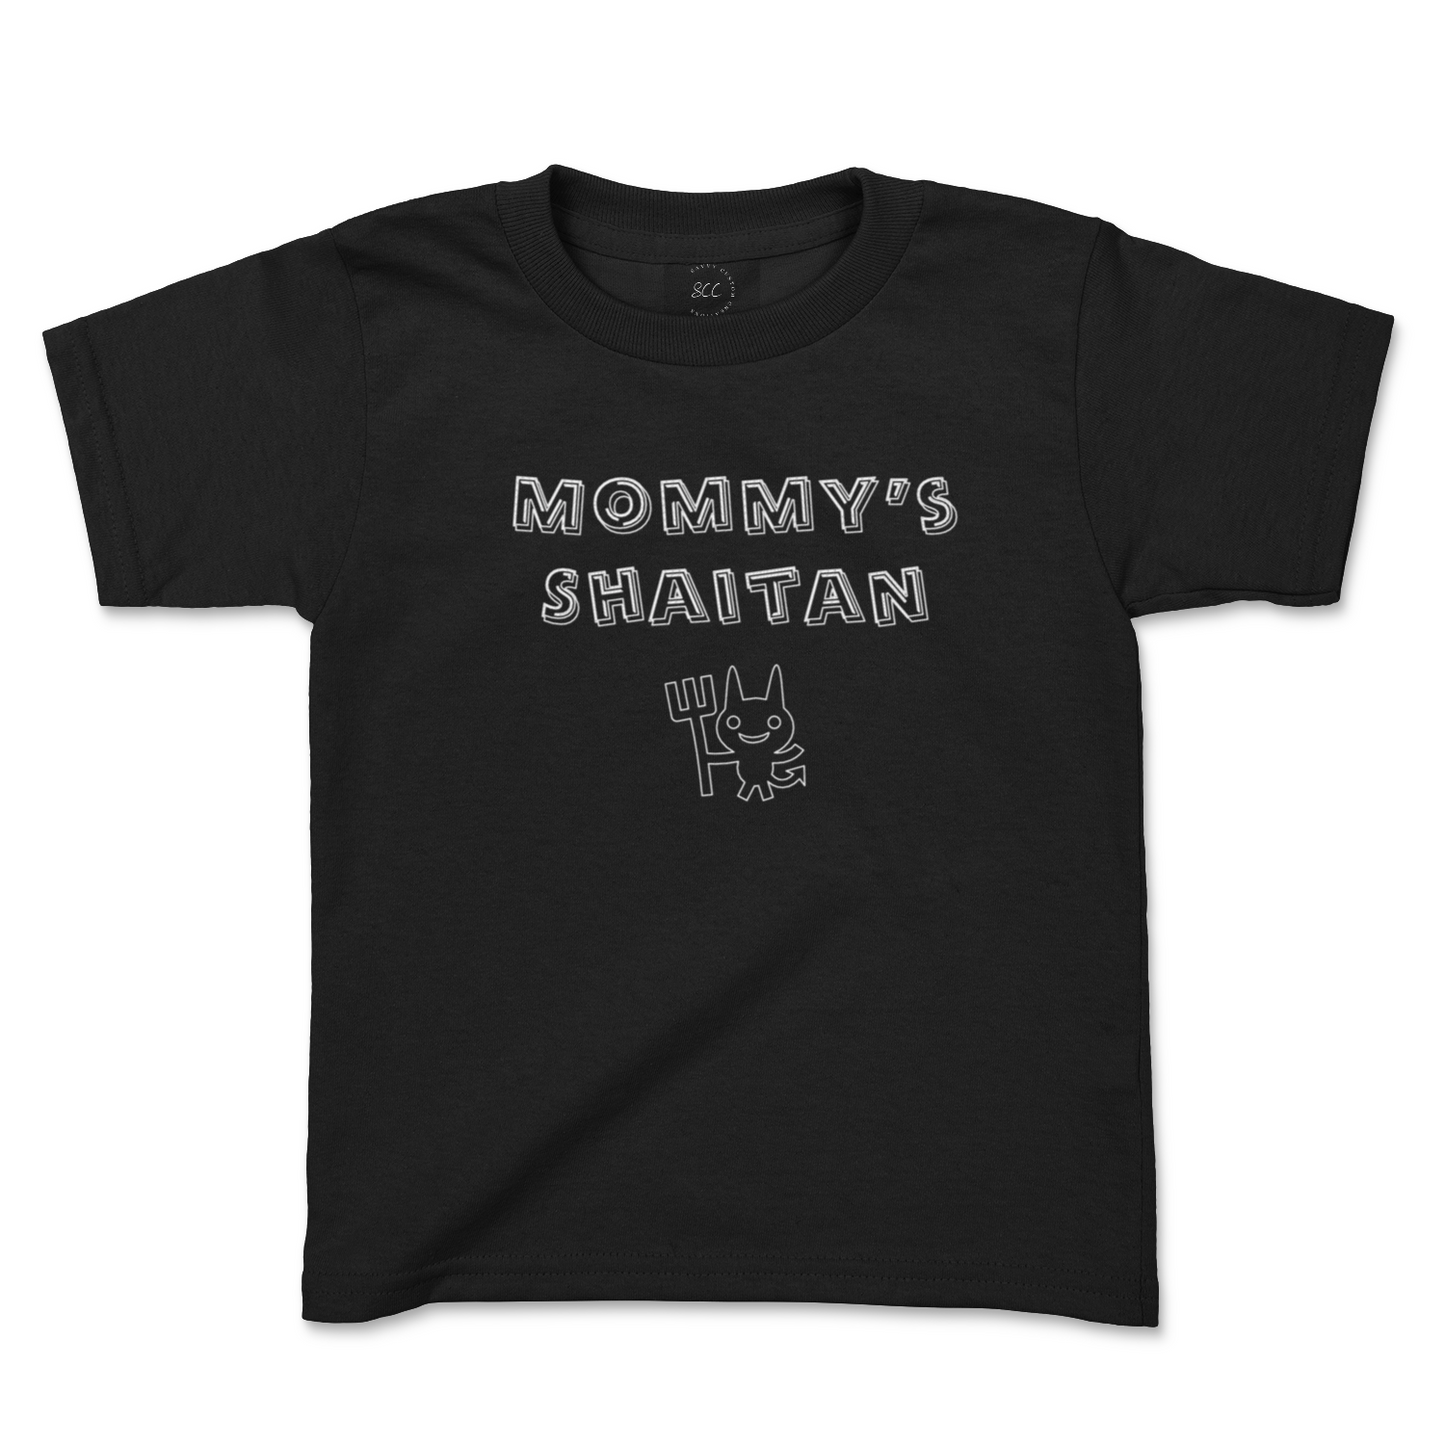 MOMMY'S SHAITAN - Kids T-Shirt